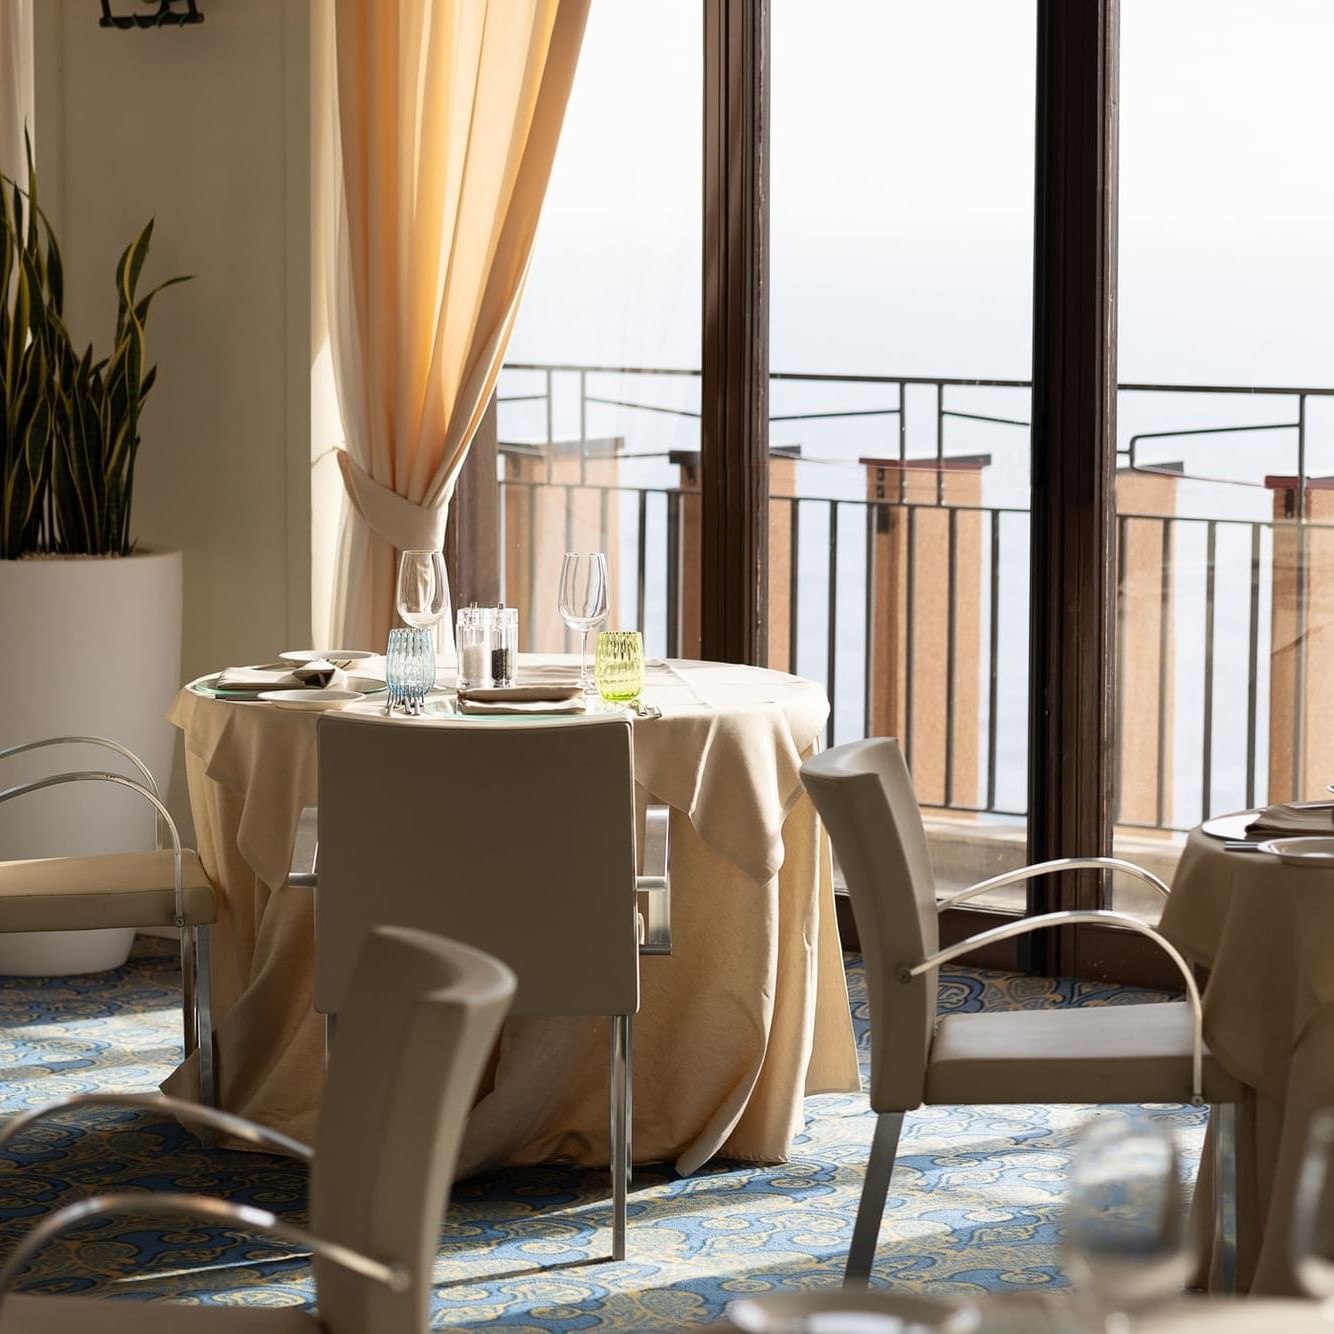 UNAHOTELS Capotaormina - Ristorante Naxos - Dettaglio tavoli allestiti a pranzo